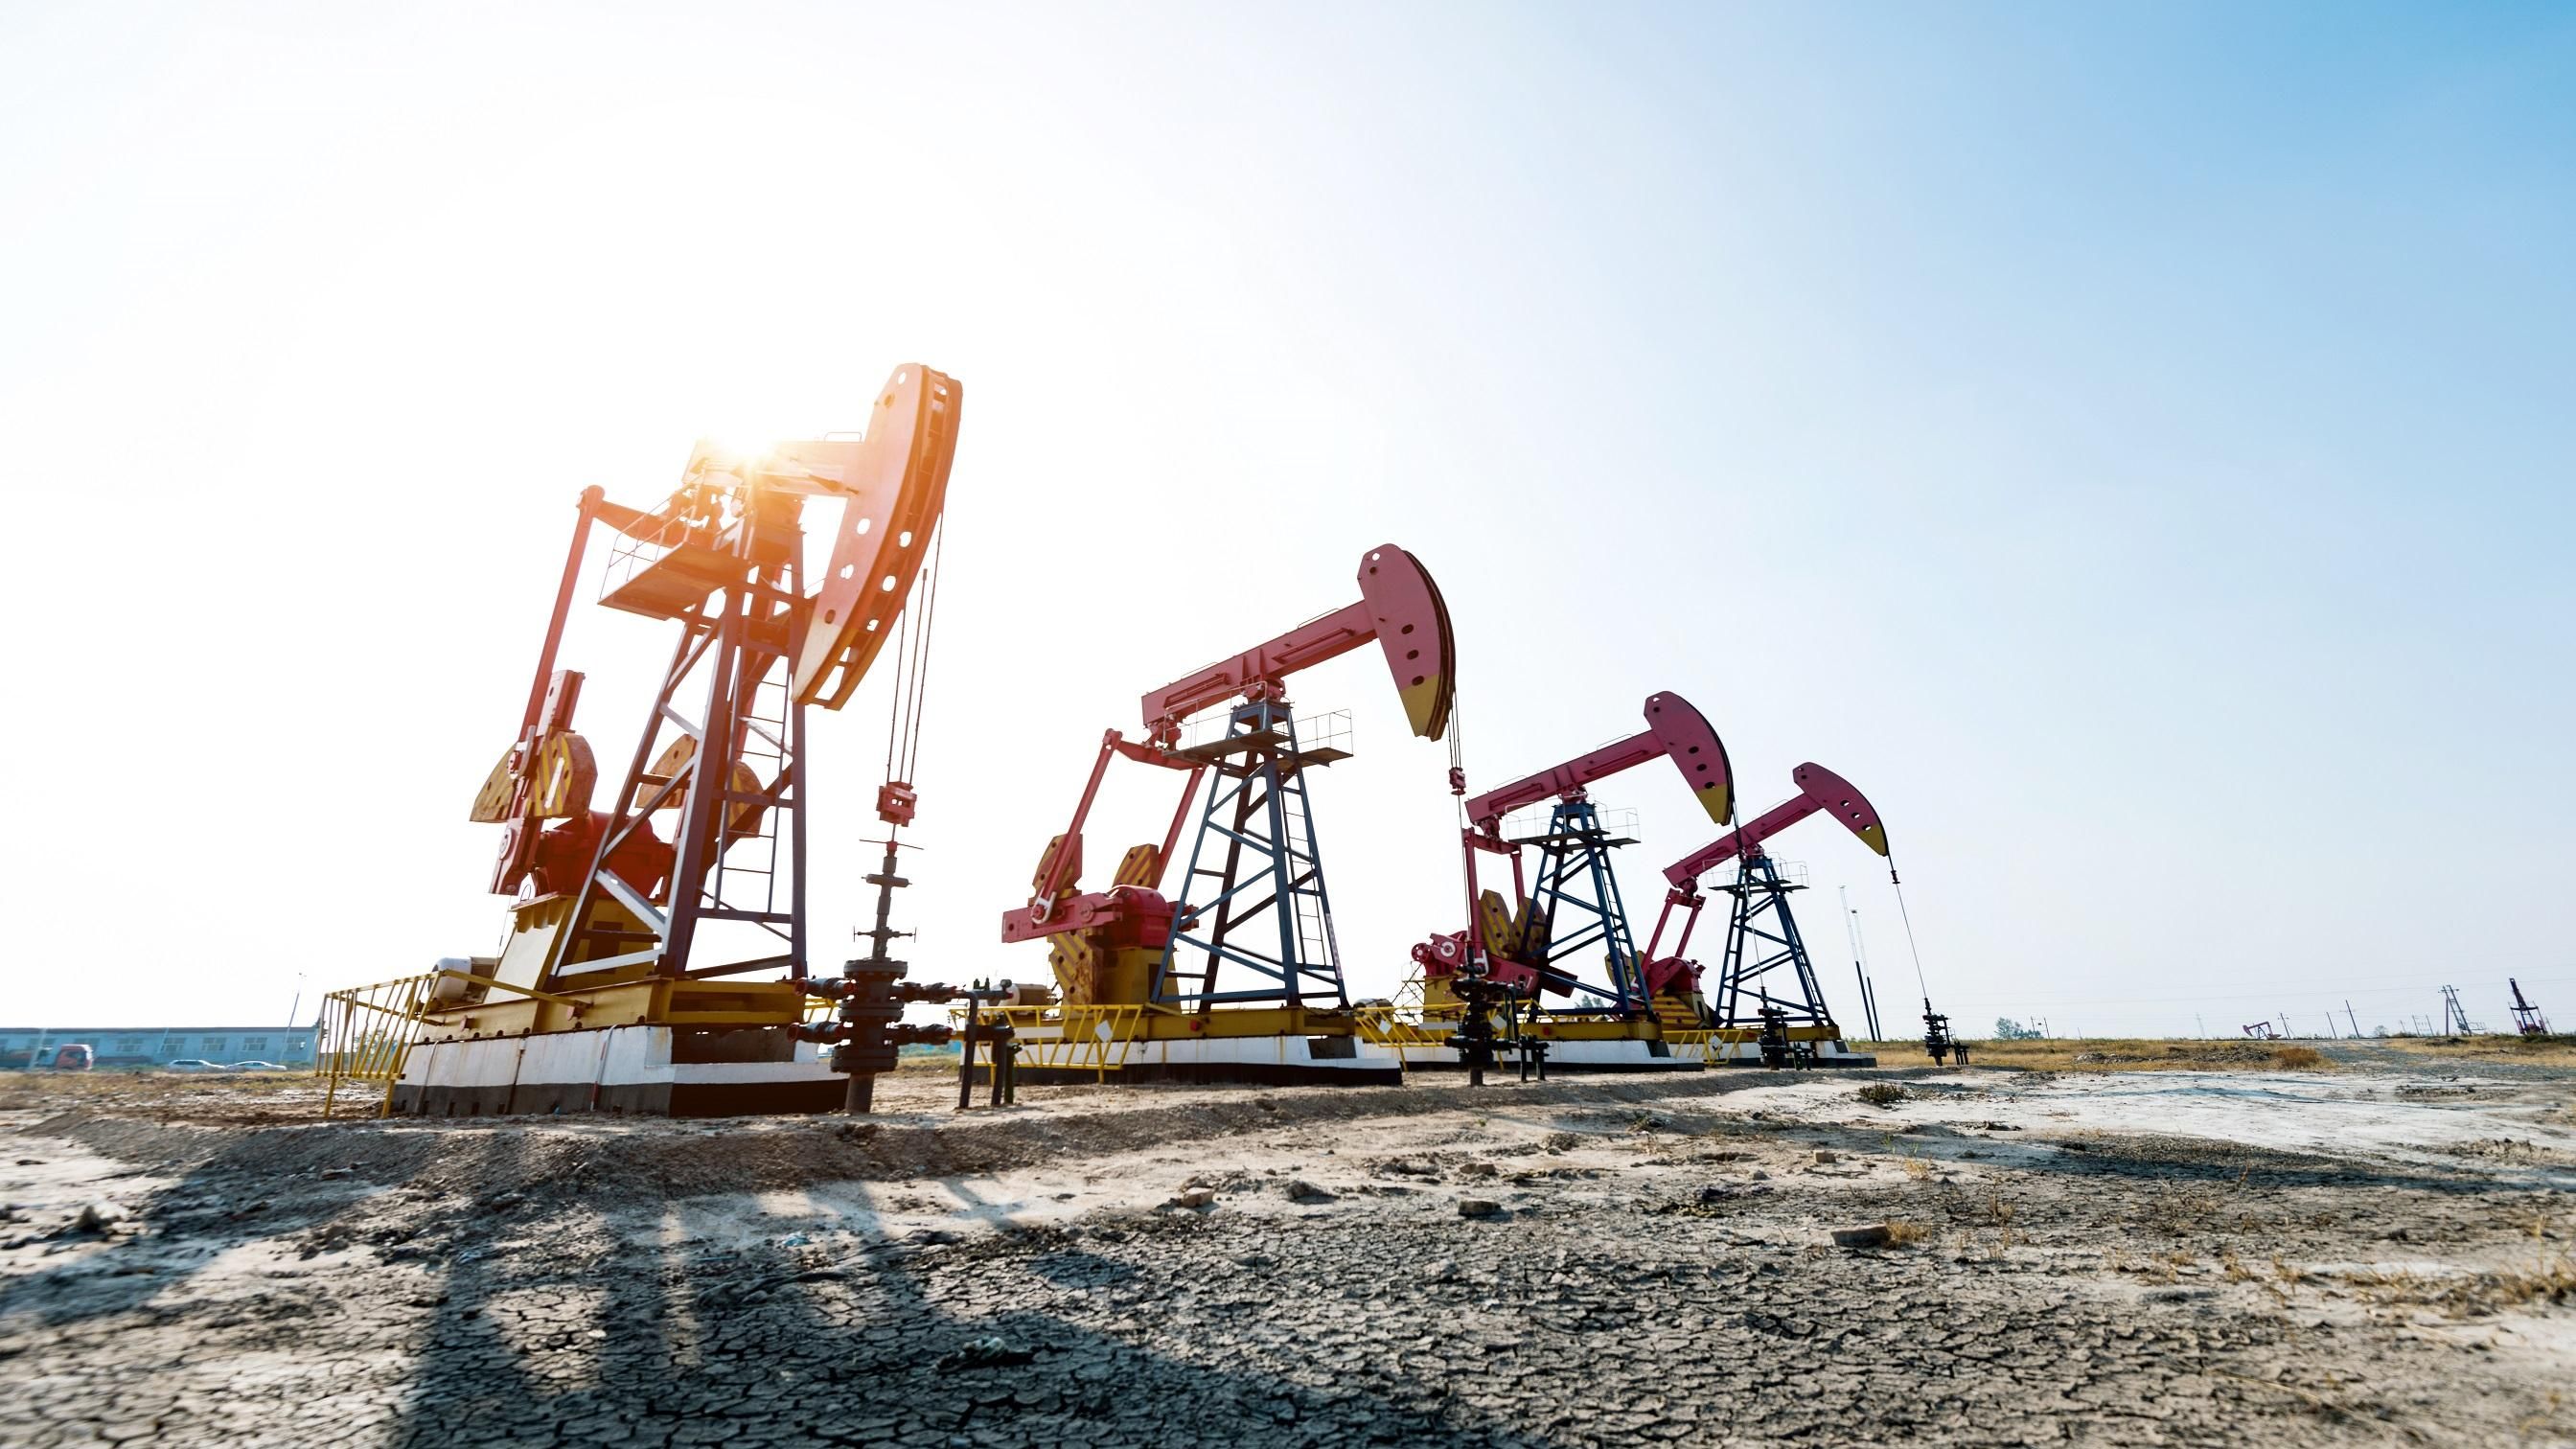 Цены на нефть не изменились, – эксперт по энергетике о торгах по нефтепродуктам